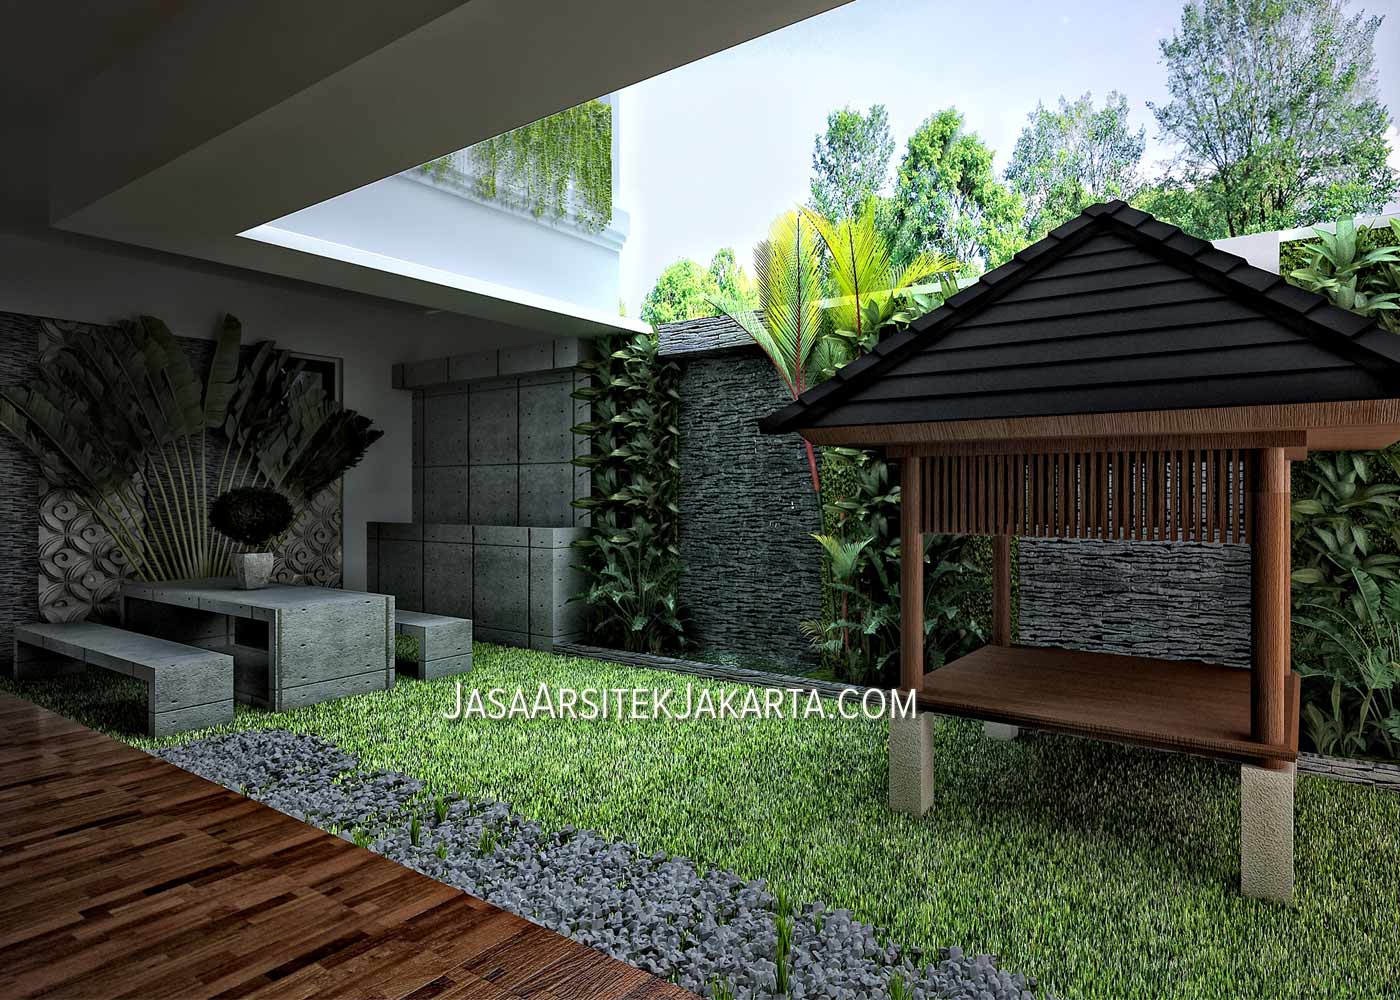 Desain Rumah Minimalis Luas 150m2 Kumpulan Desain Rumah